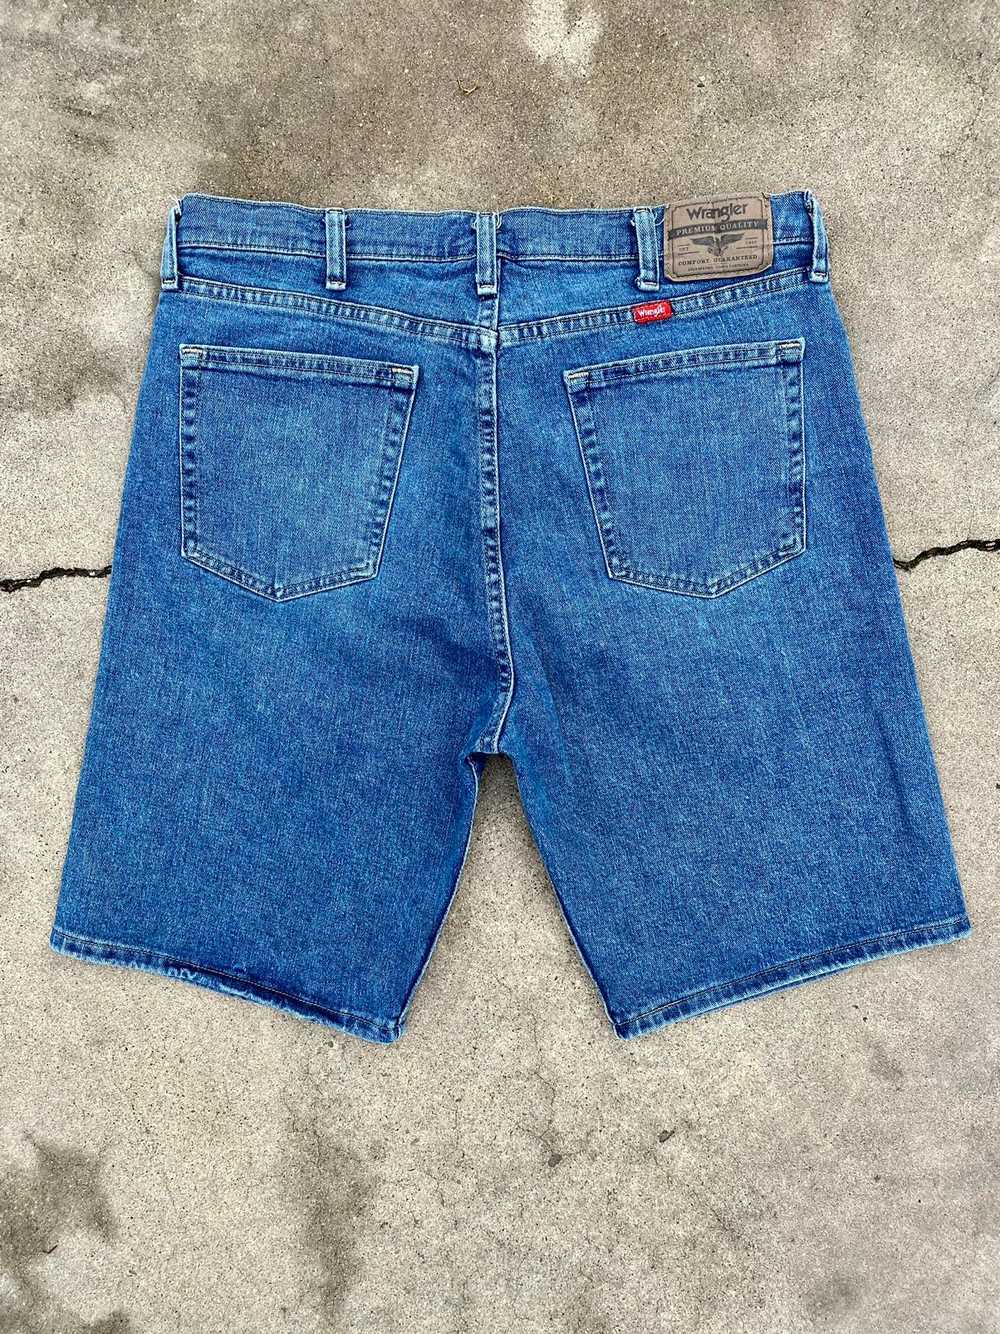 Vintage × Wrangler Vintage wrangler shorts - image 6